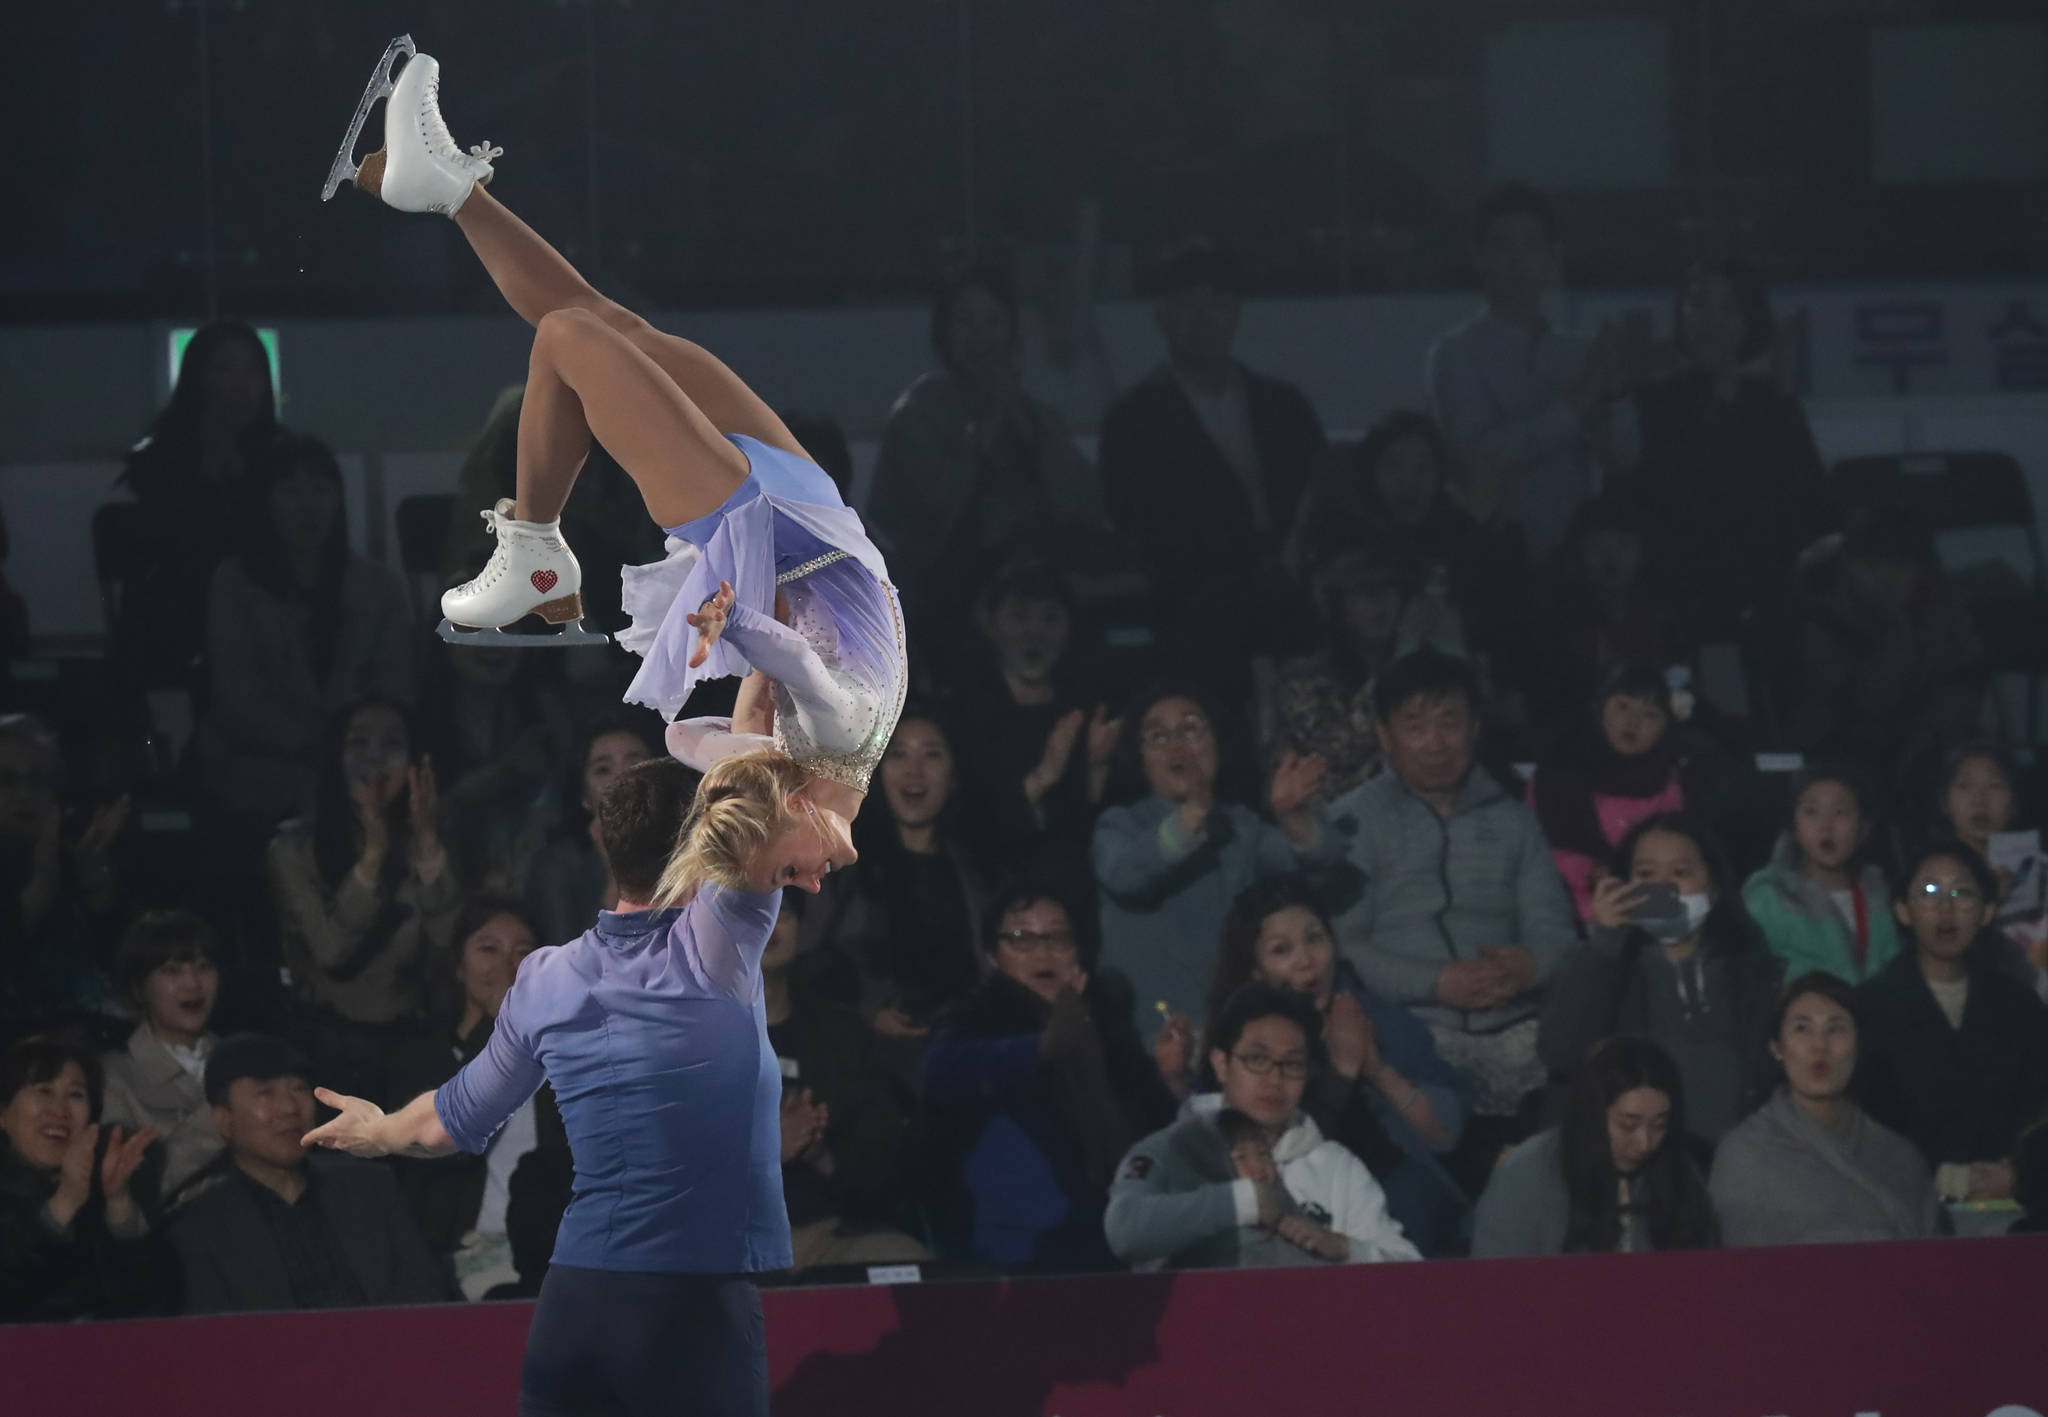 평창 겨울올림픽 피겨 페어 금메달리스트인 알리오나 사브첸코와 브루노 마소트 선수의 공연을 보며 관객들이 박수 갈채를 보내고 있다. 우상조 기자